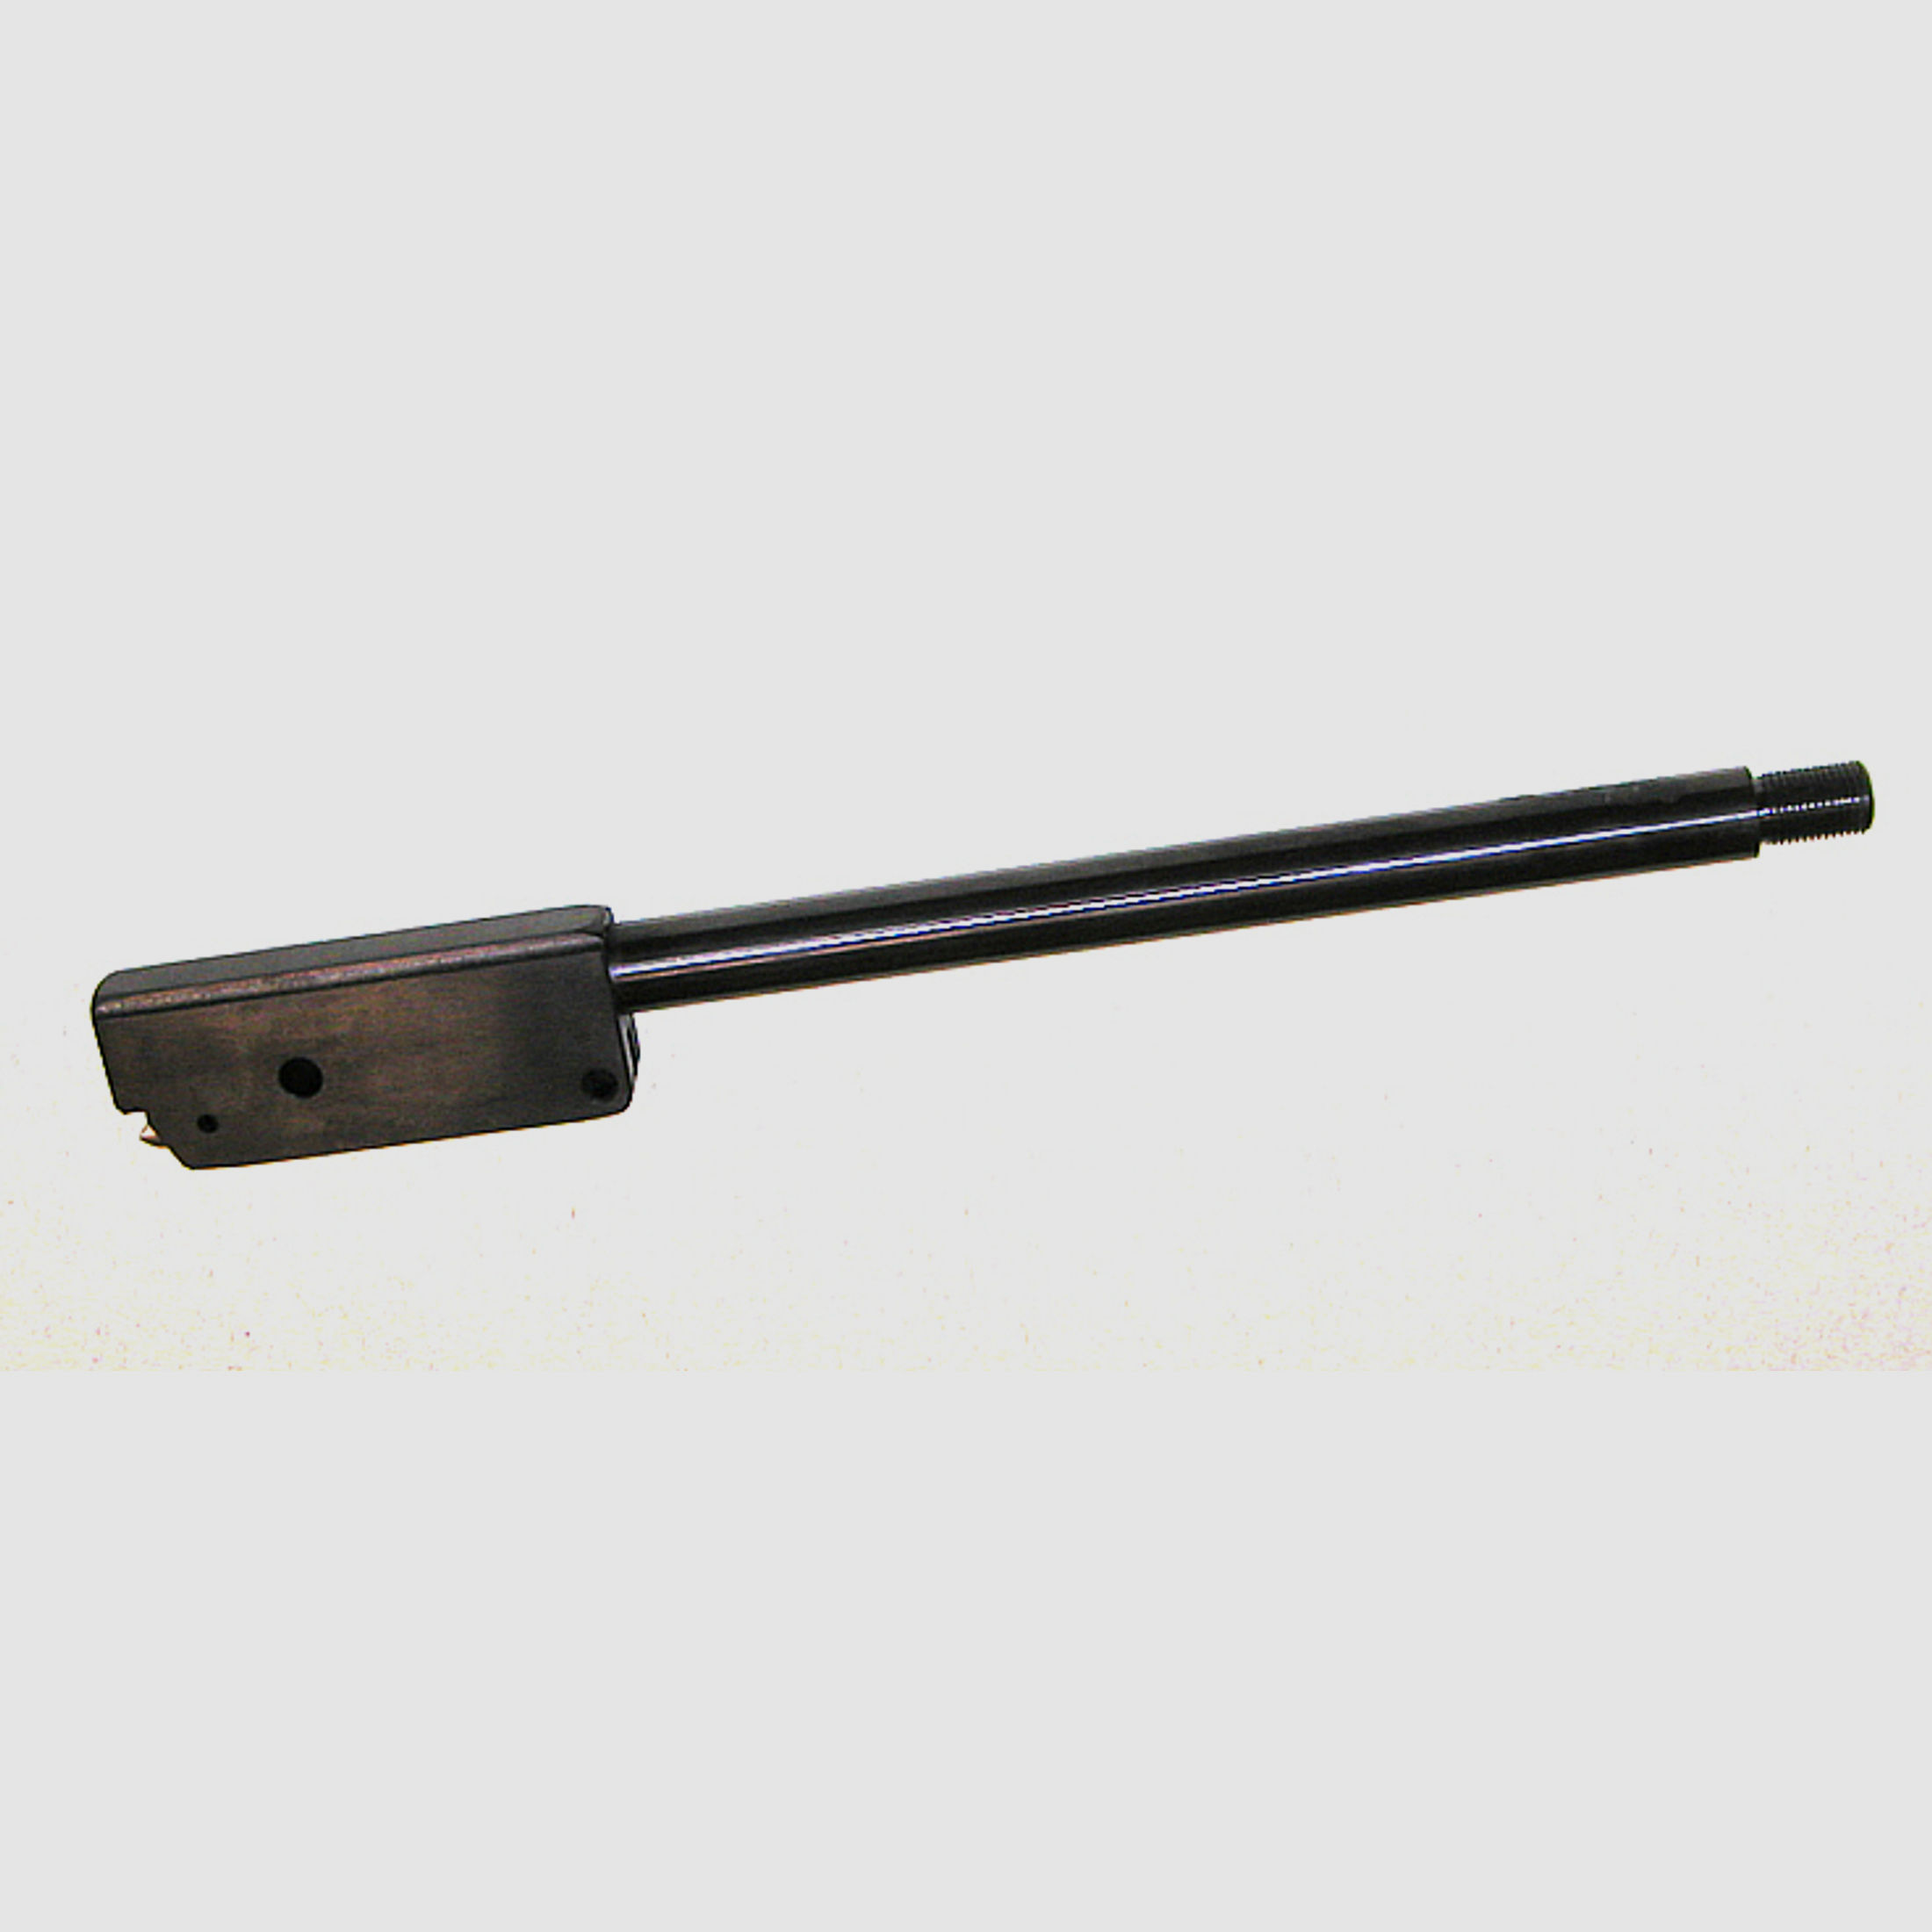 Wechsellauf mit SchalldĂ¤mpfergewinde 31 cm fĂĽr Luftgewehr Weihrauch HW 80 Kaliber 4,5 mm (P18)